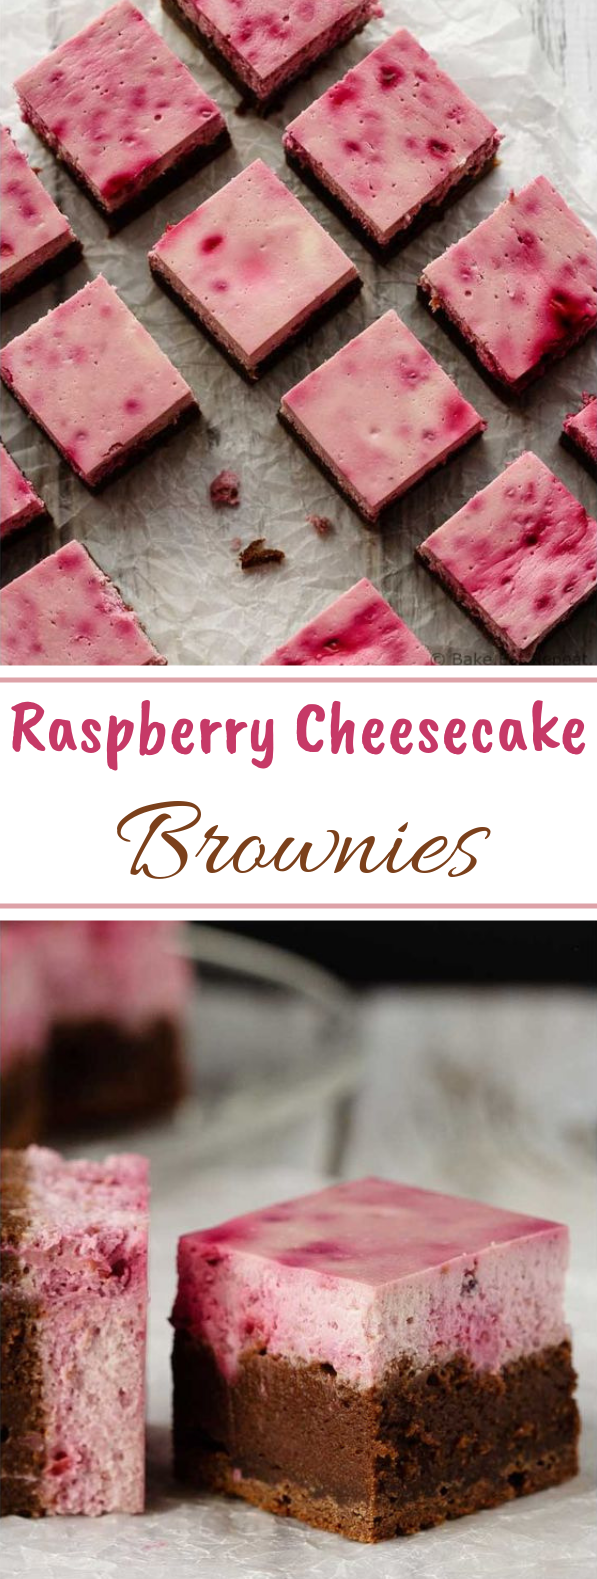 Raspberry Cheesecake Brownies #desserts #brownies